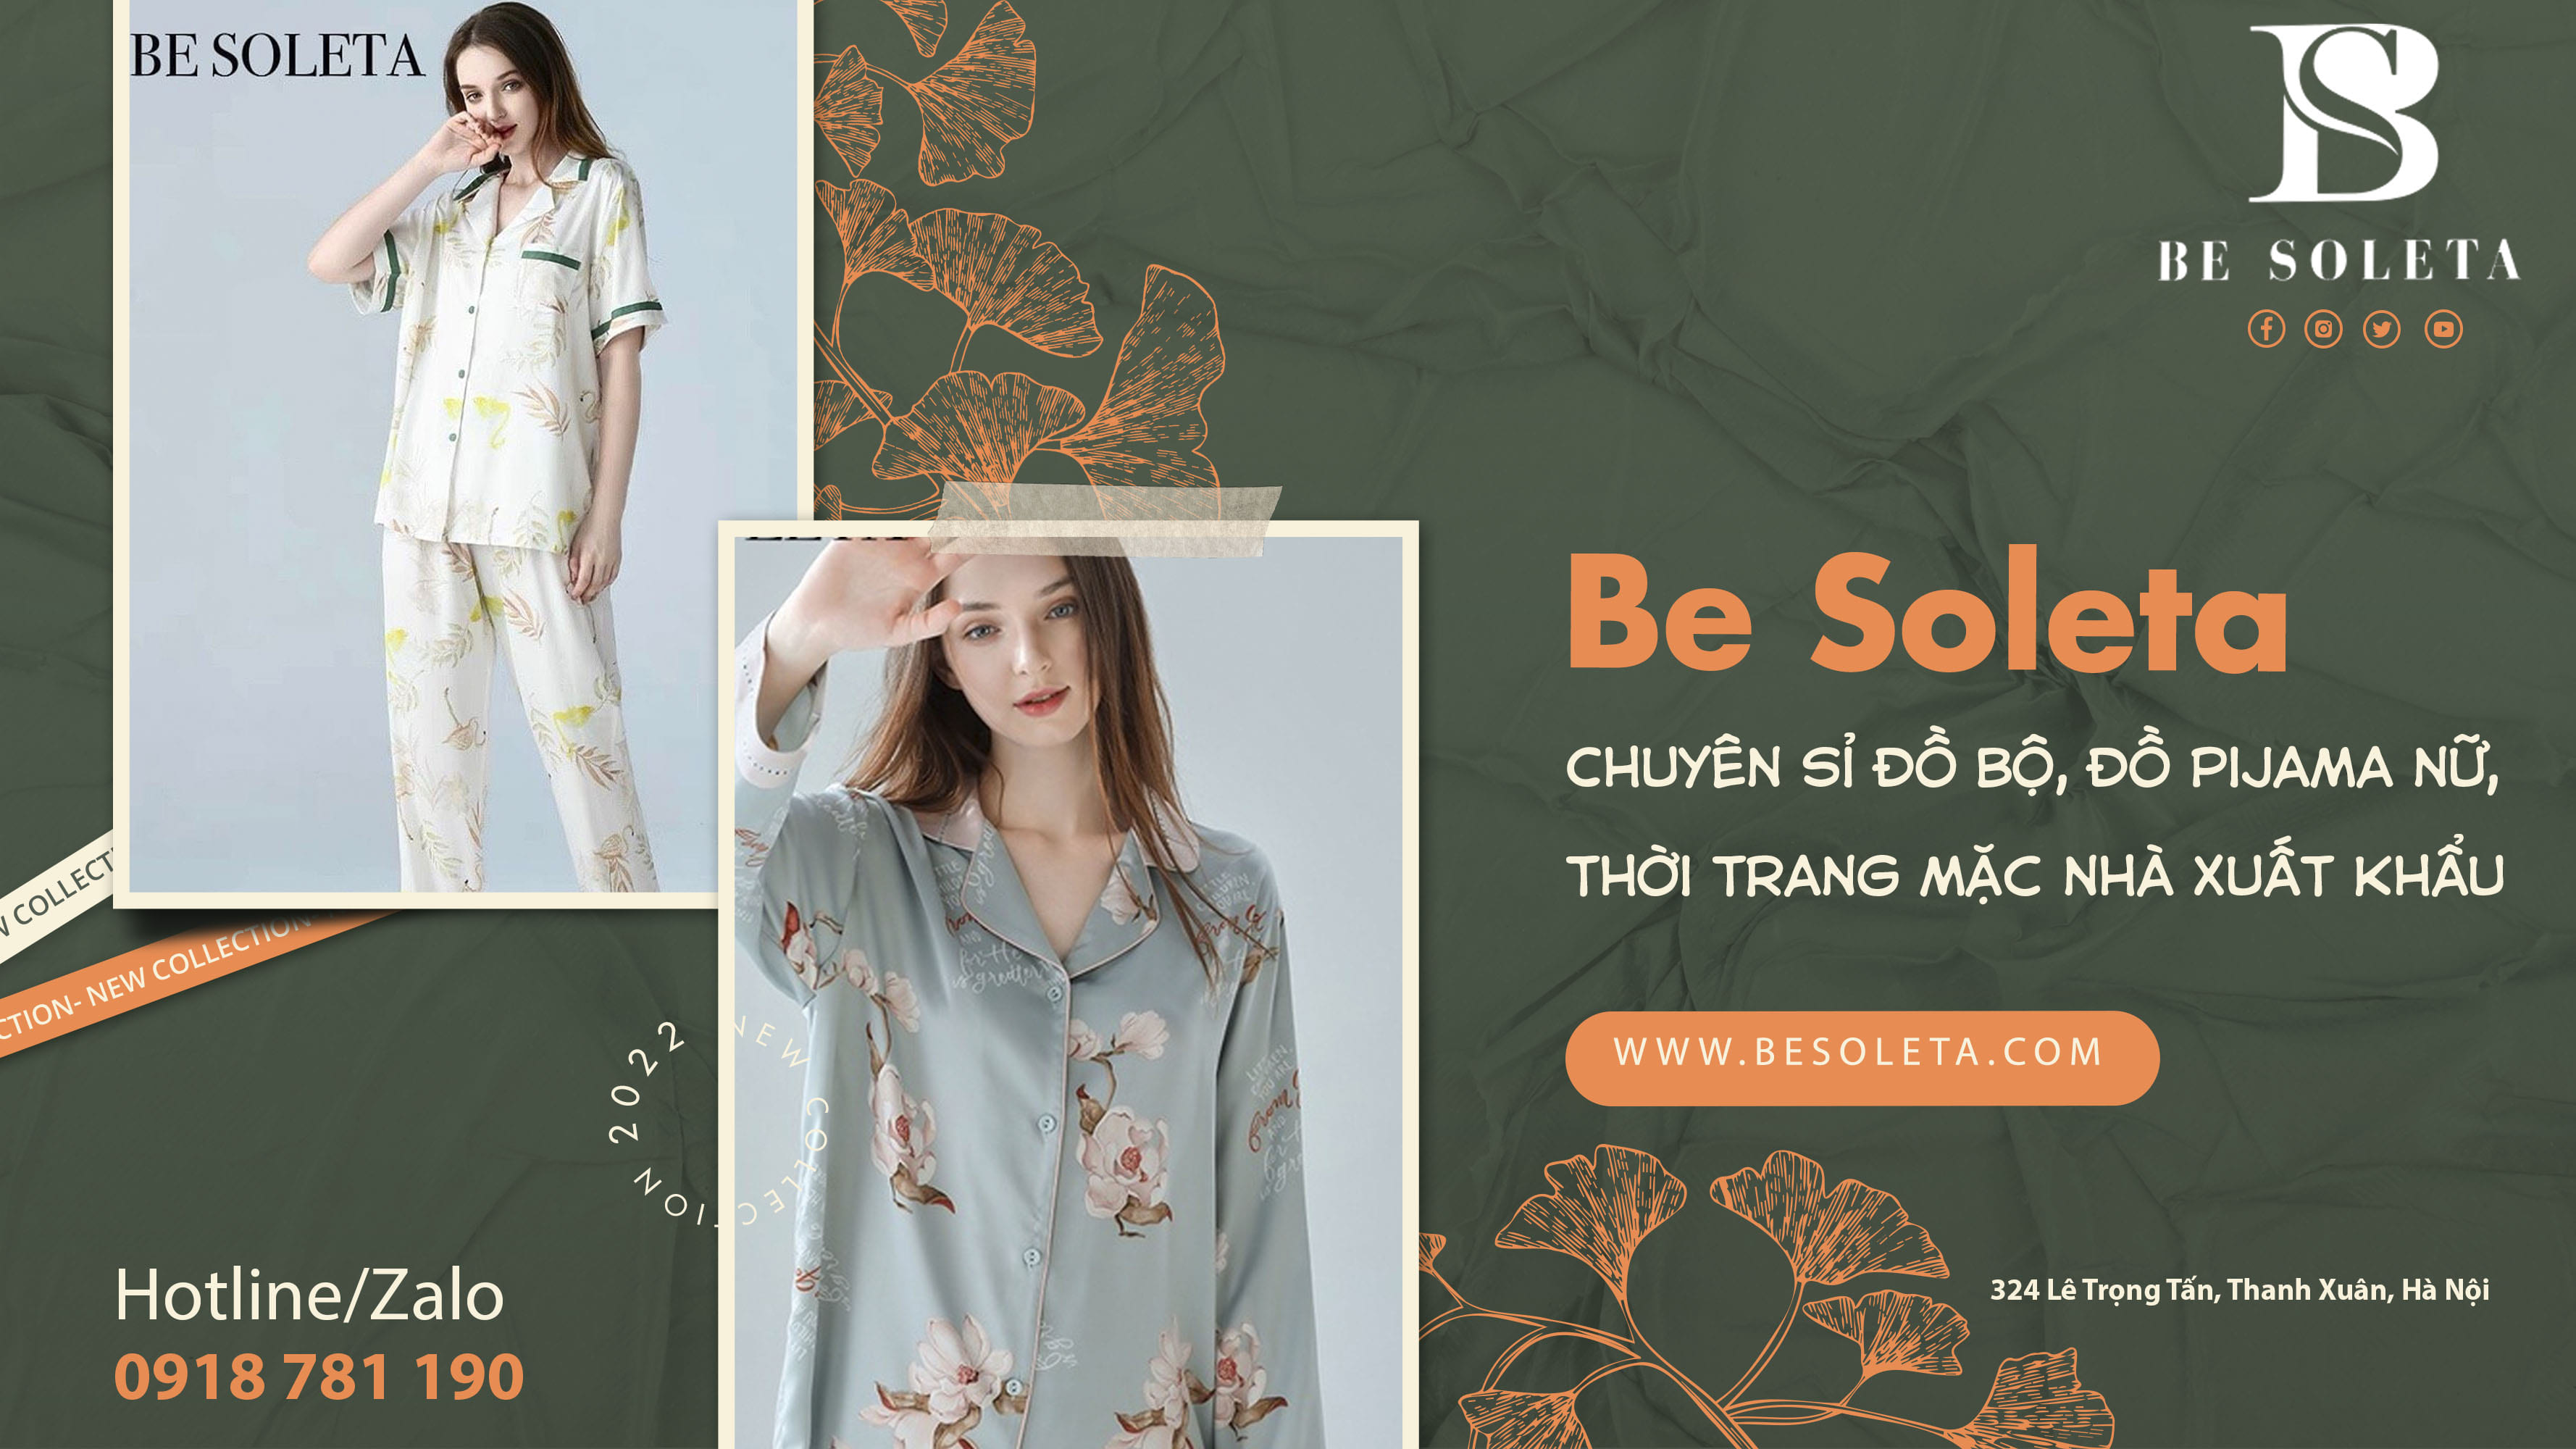 Be Soleta – Thương hiệu thời trang mặc nhà được ưa chuộng